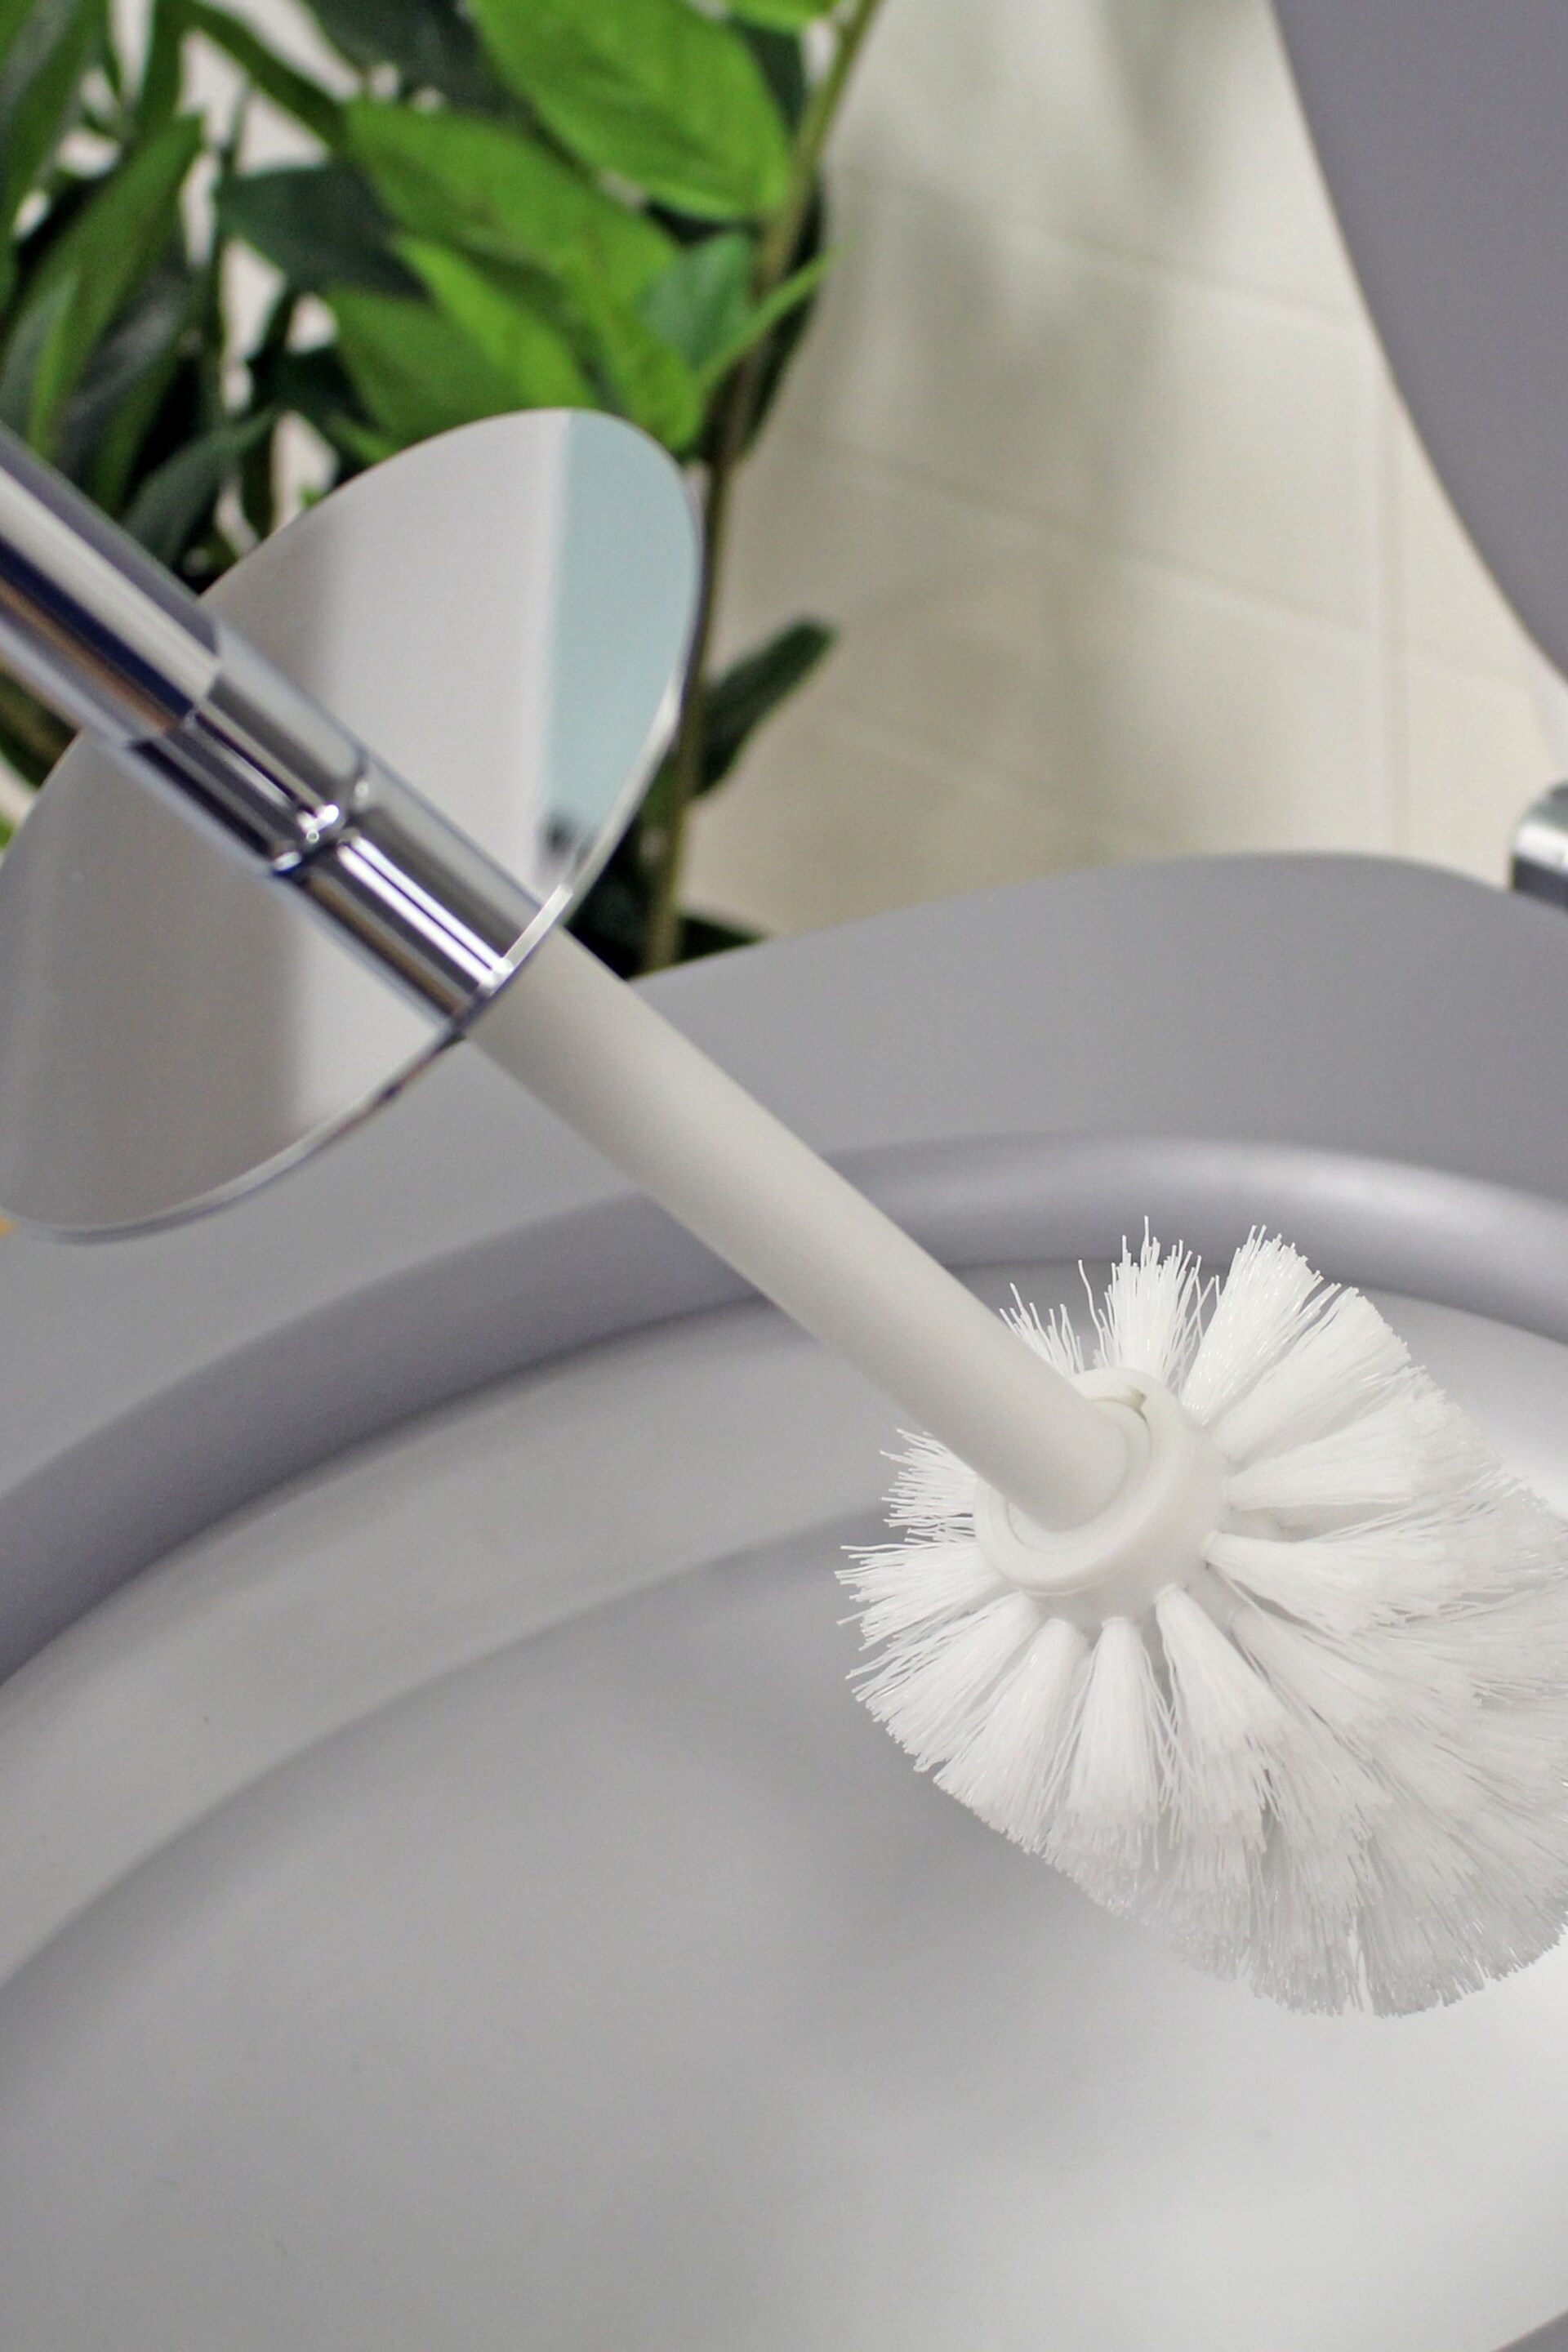 Showerdrape White Octavia Toilet Brush & Holder - Image 2 of 3